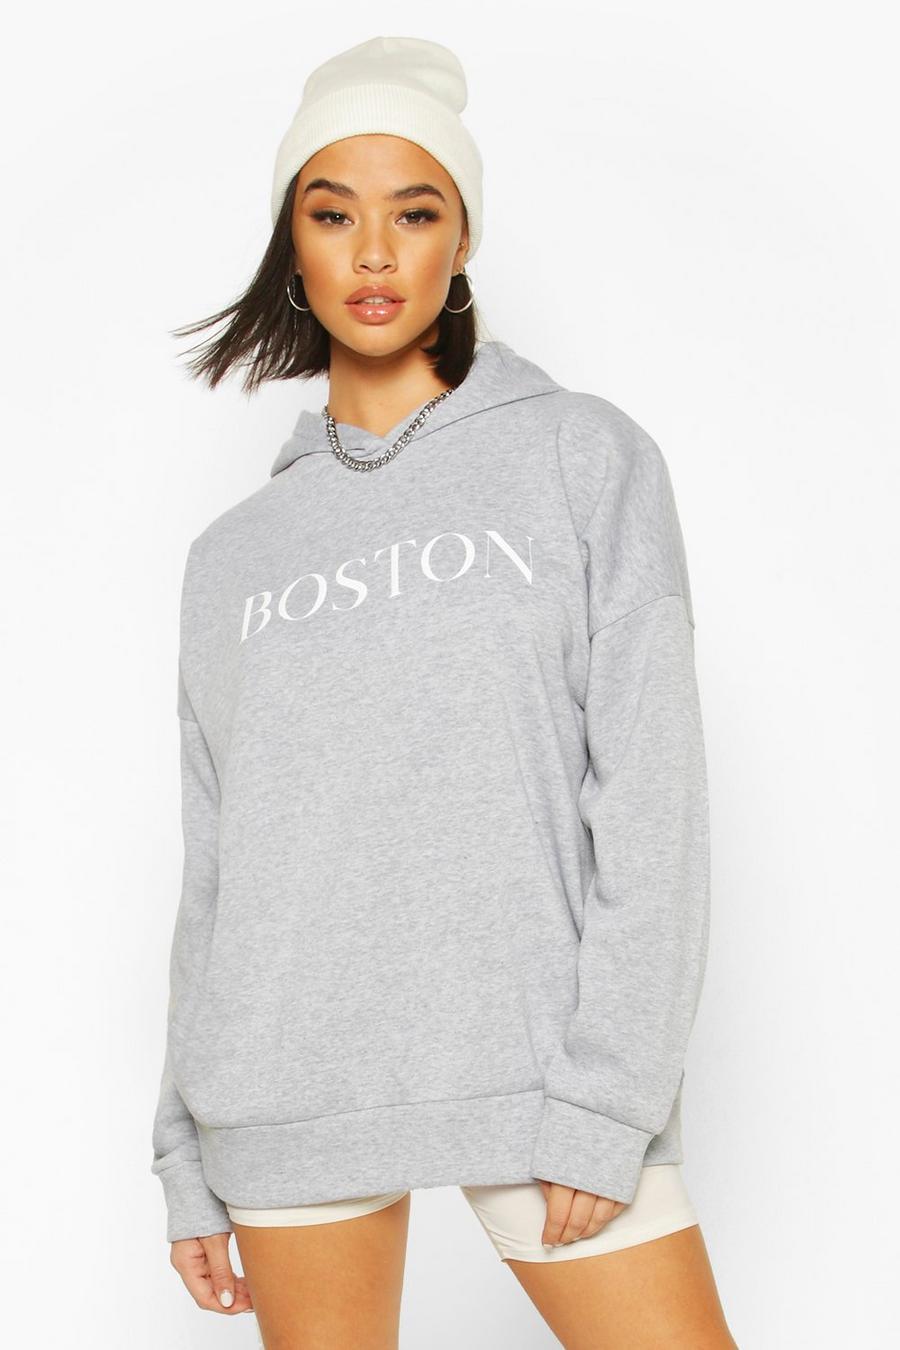 Sudadera ancha con capucha y eslogan “Boston” image number 1